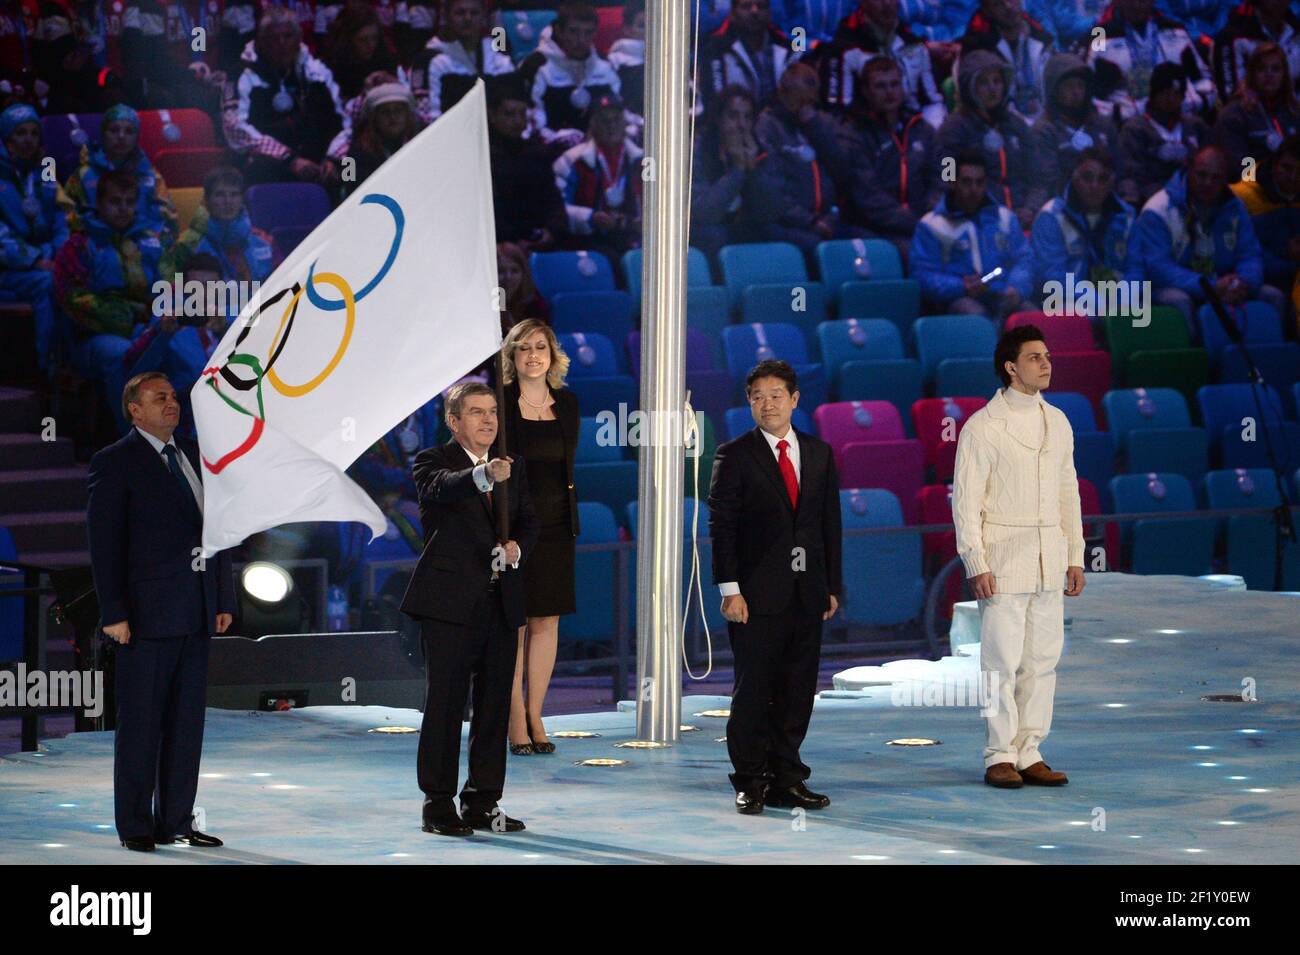 Der IOC-Präsident Thomas Bach übergibt dem Bürgermeister von PyeongChang, dem Gastgeber der Olympischen Winterspiele 2018, während der Abschlussfeier der XXII. Olympischen Winterspiele Sotchi 2014 im Olympiastadion Fisht am 23. Februar 2014 in Sotschi, Russland, die olympische Flagge. Fotopool KMSP / DPPI Stockfoto